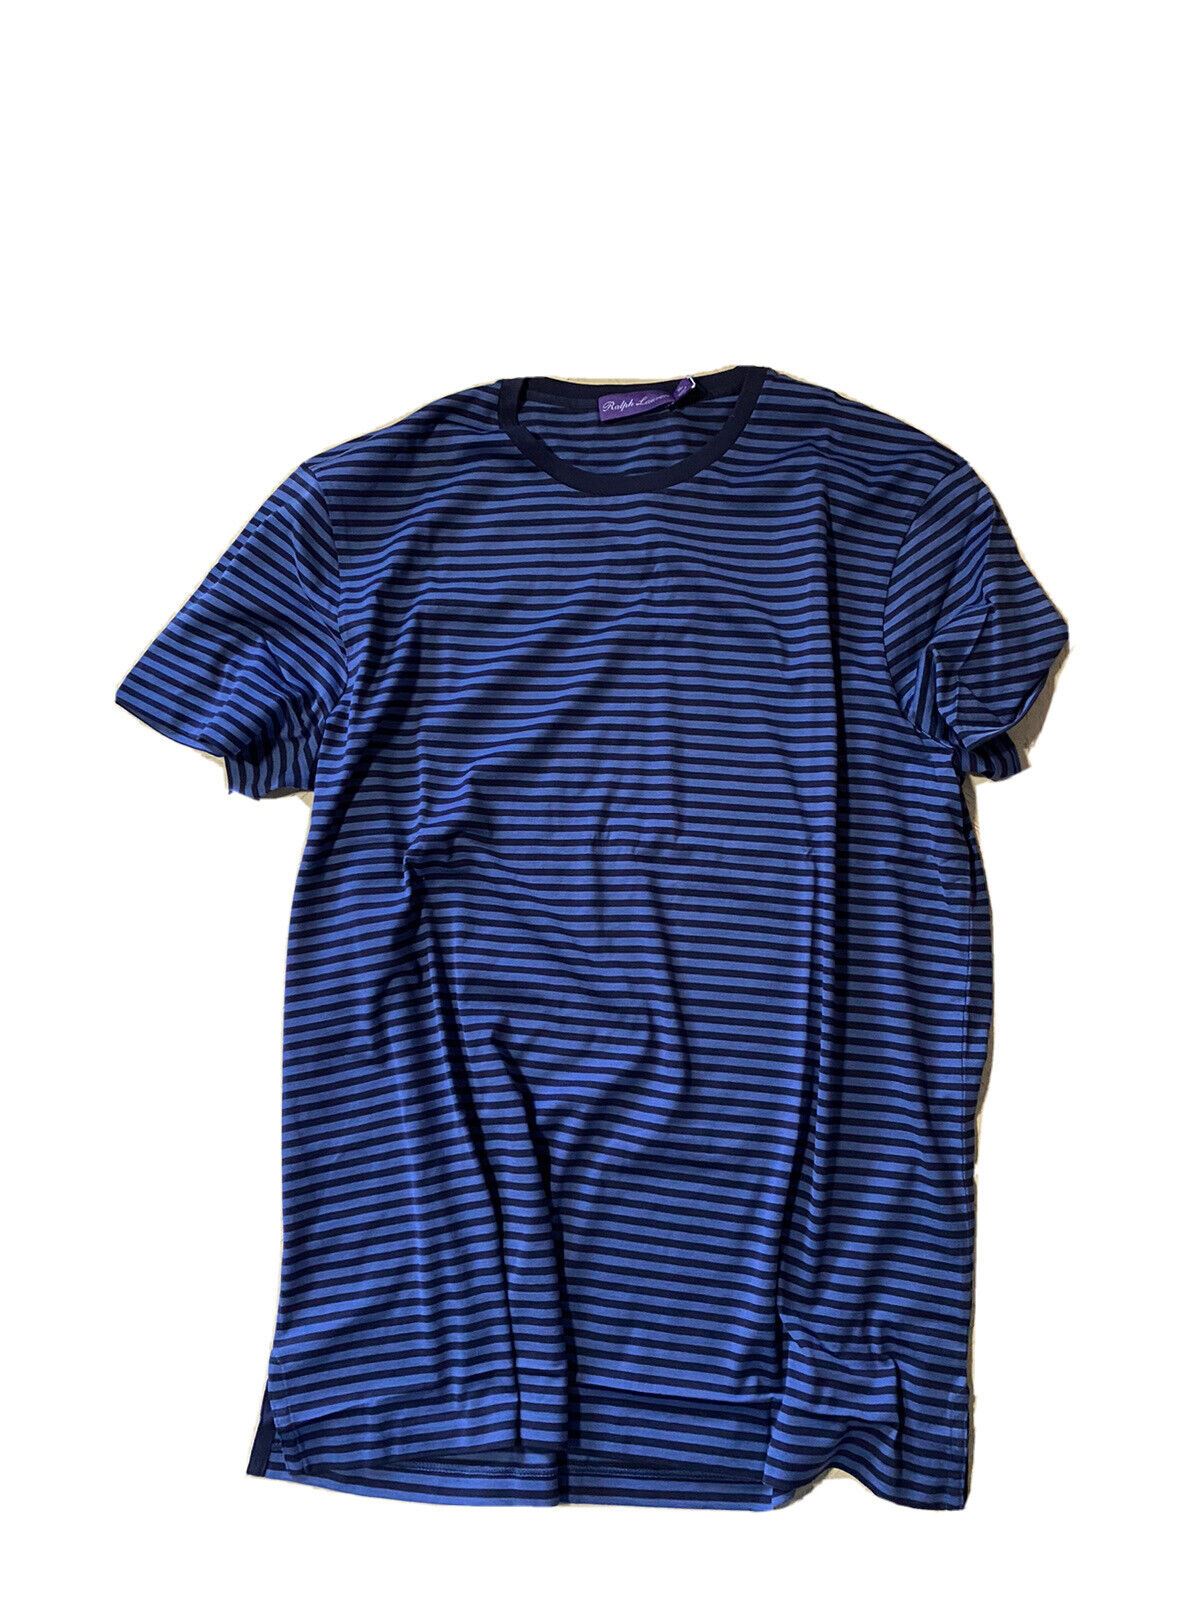 Neu mit Etikett: Gestreiftes Rundhals-T-Shirt für Herren von Ralph Lauren Purple Label, Marineblau, XL